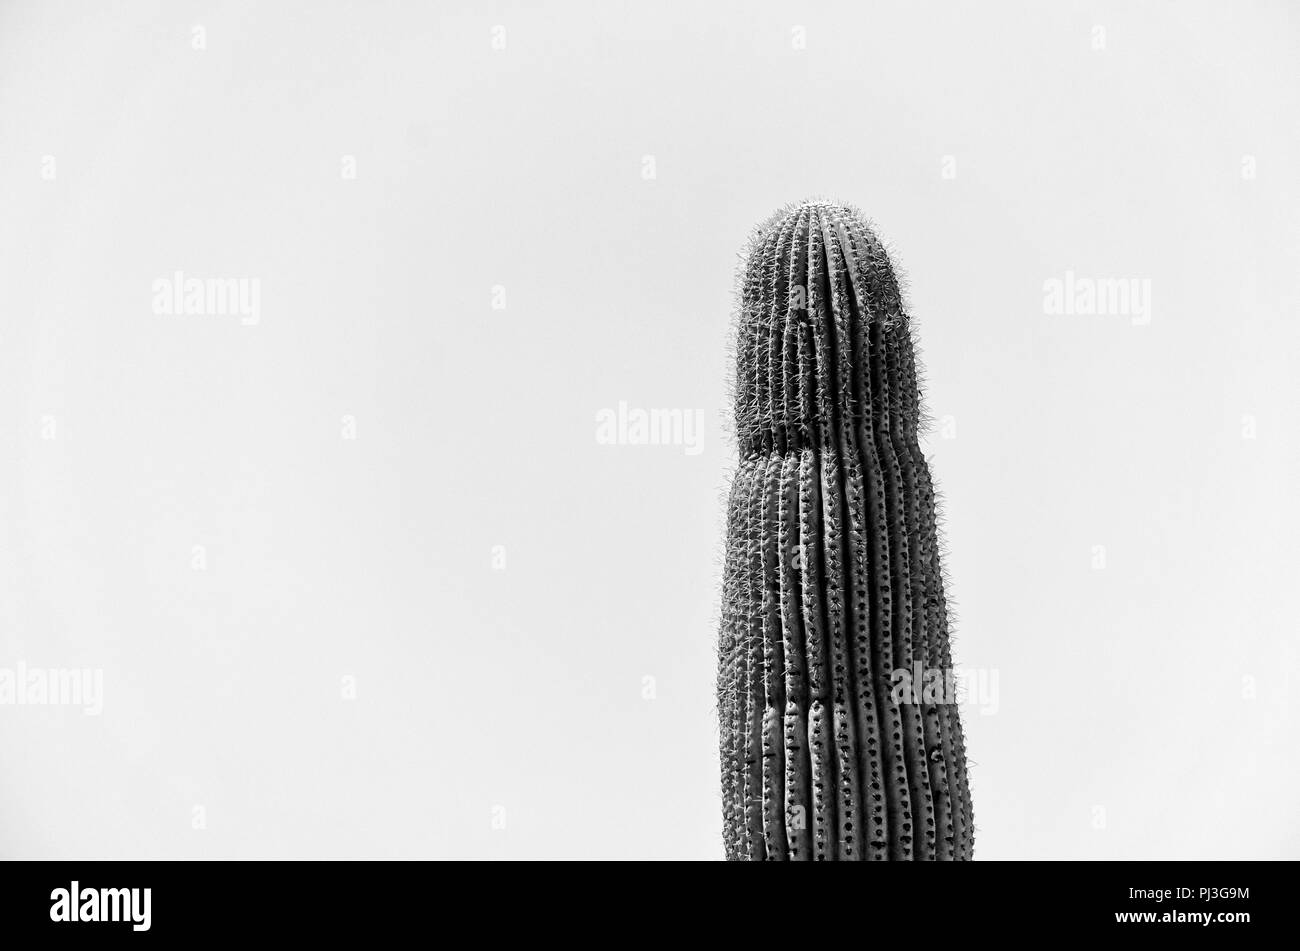 Haut de Saguaro cactus contre le ciel, noir et blanc. Banque D'Images